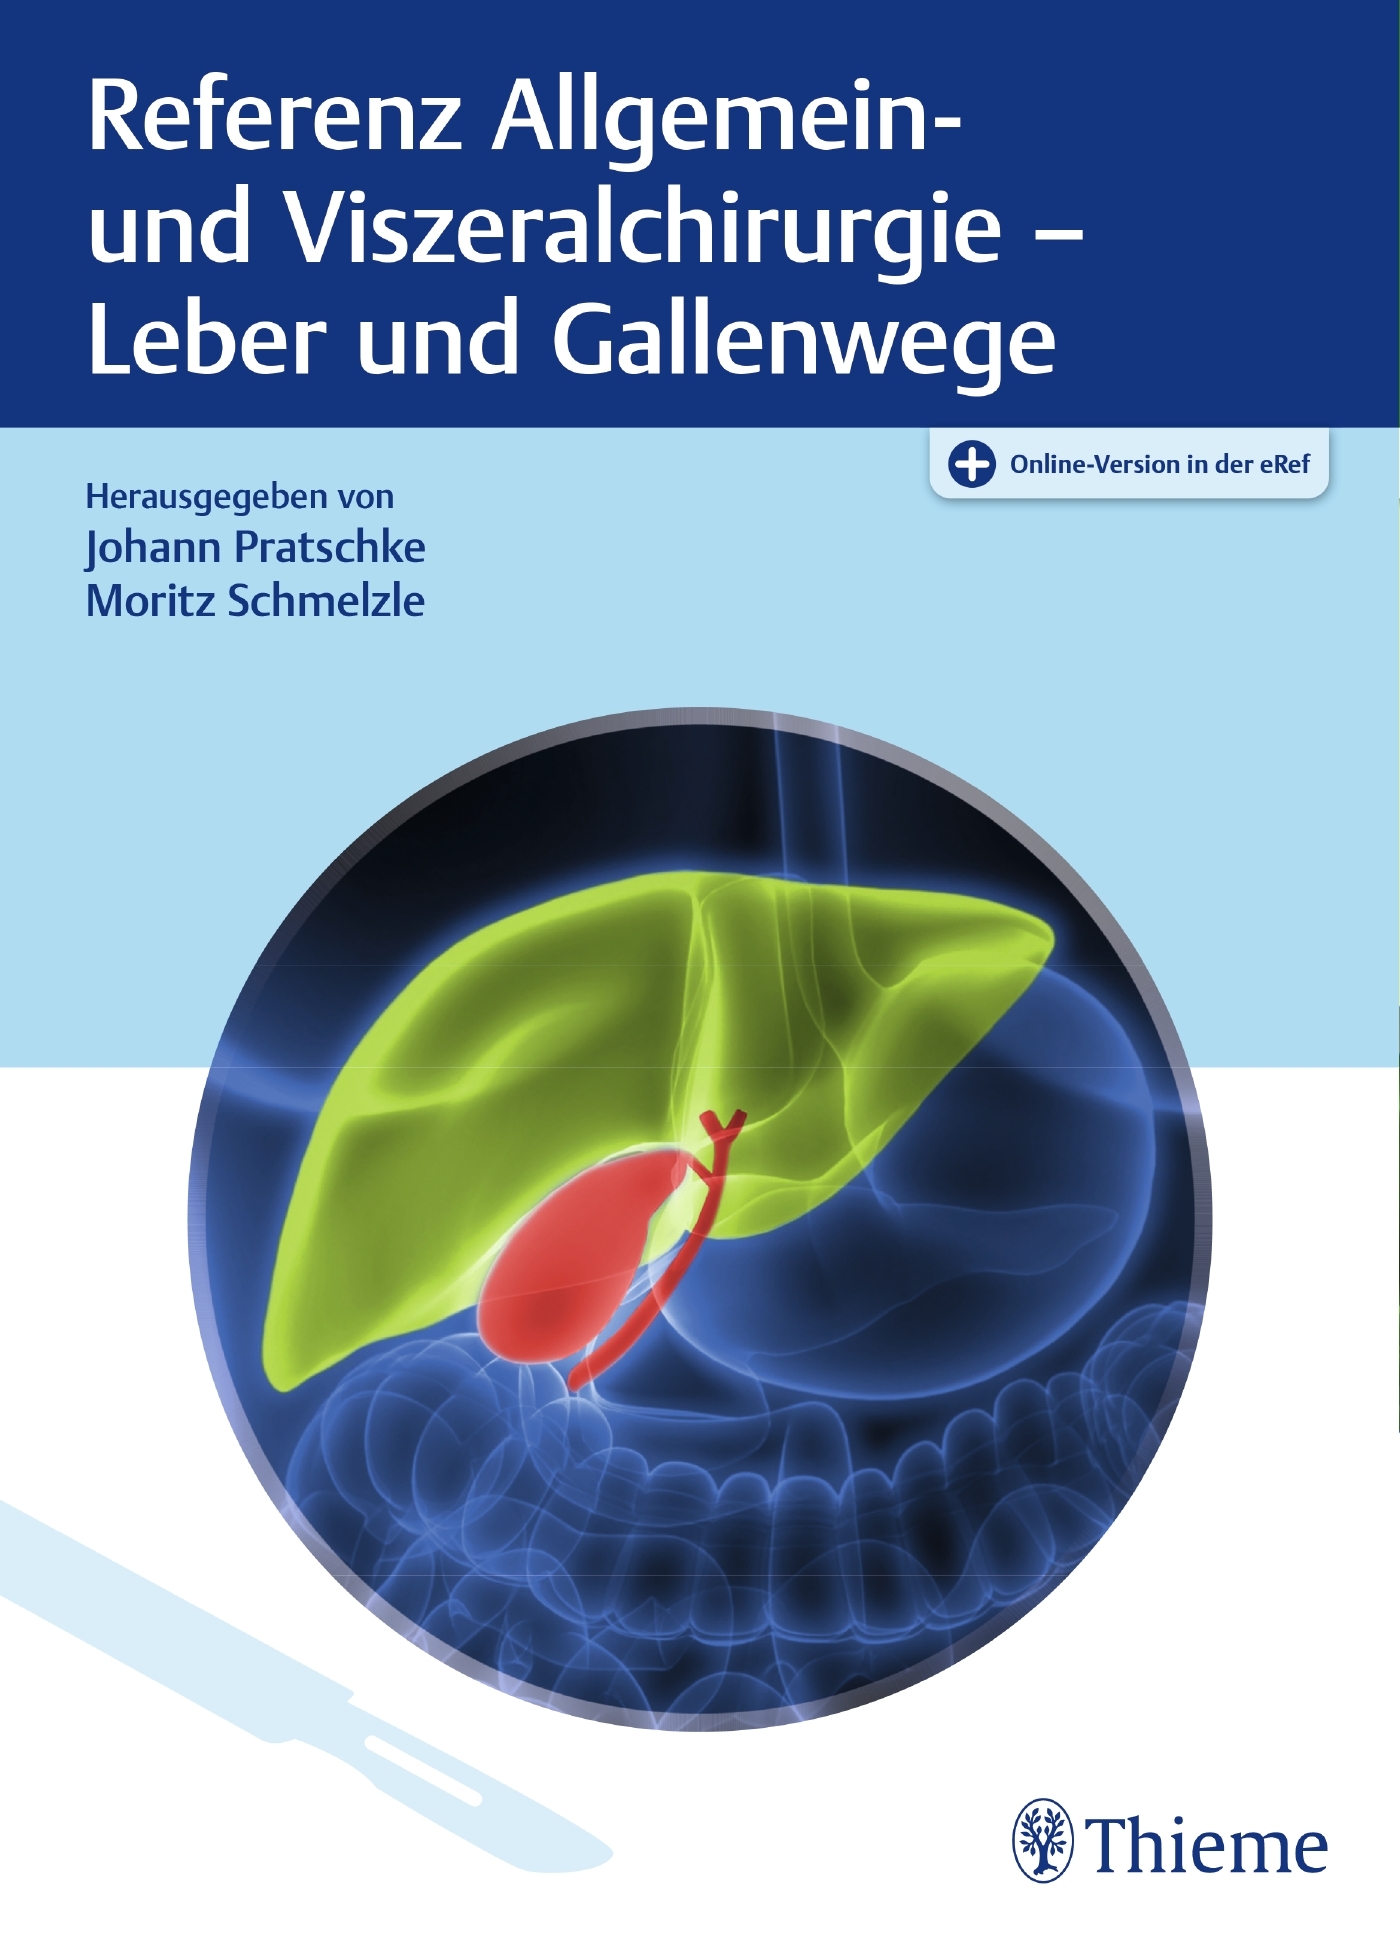 Referenz Allgemein- und Viszeralchirurgie - Leber und Gallenwege